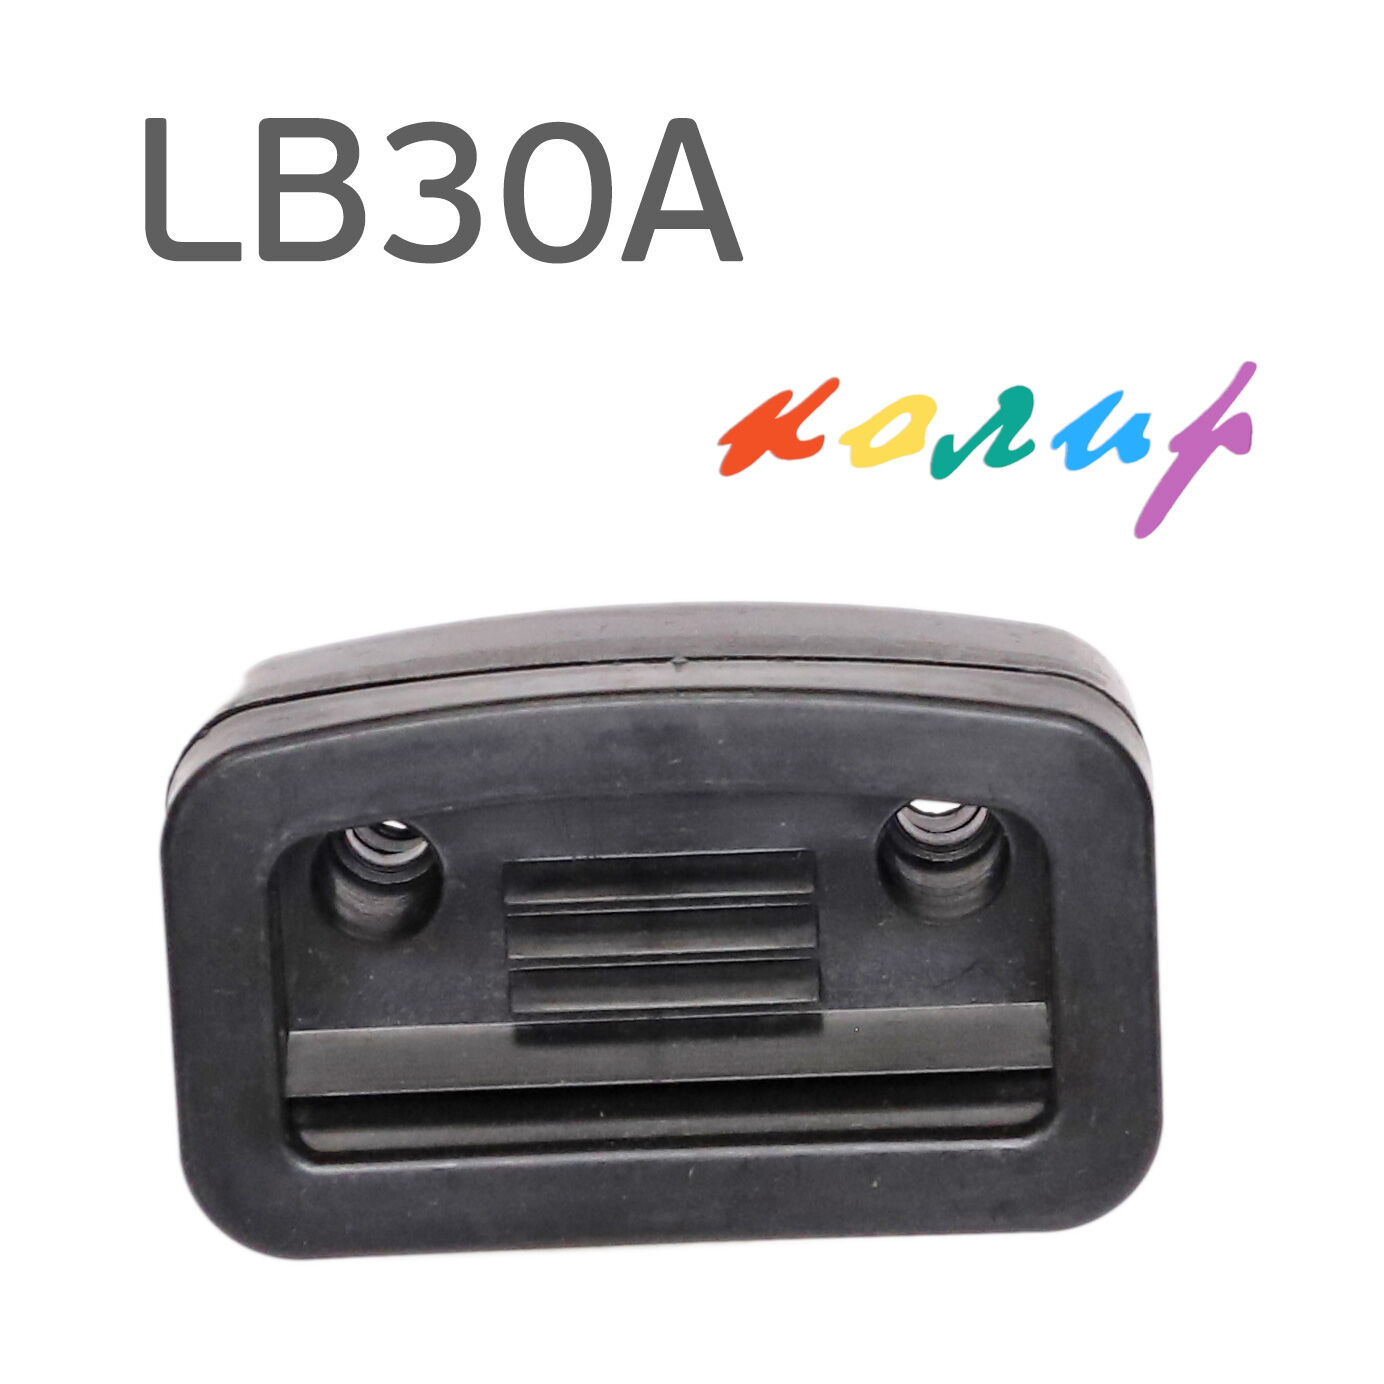 Фильтр на компрессор Remeza LB30A в сборе, воздушный, прямоугольный